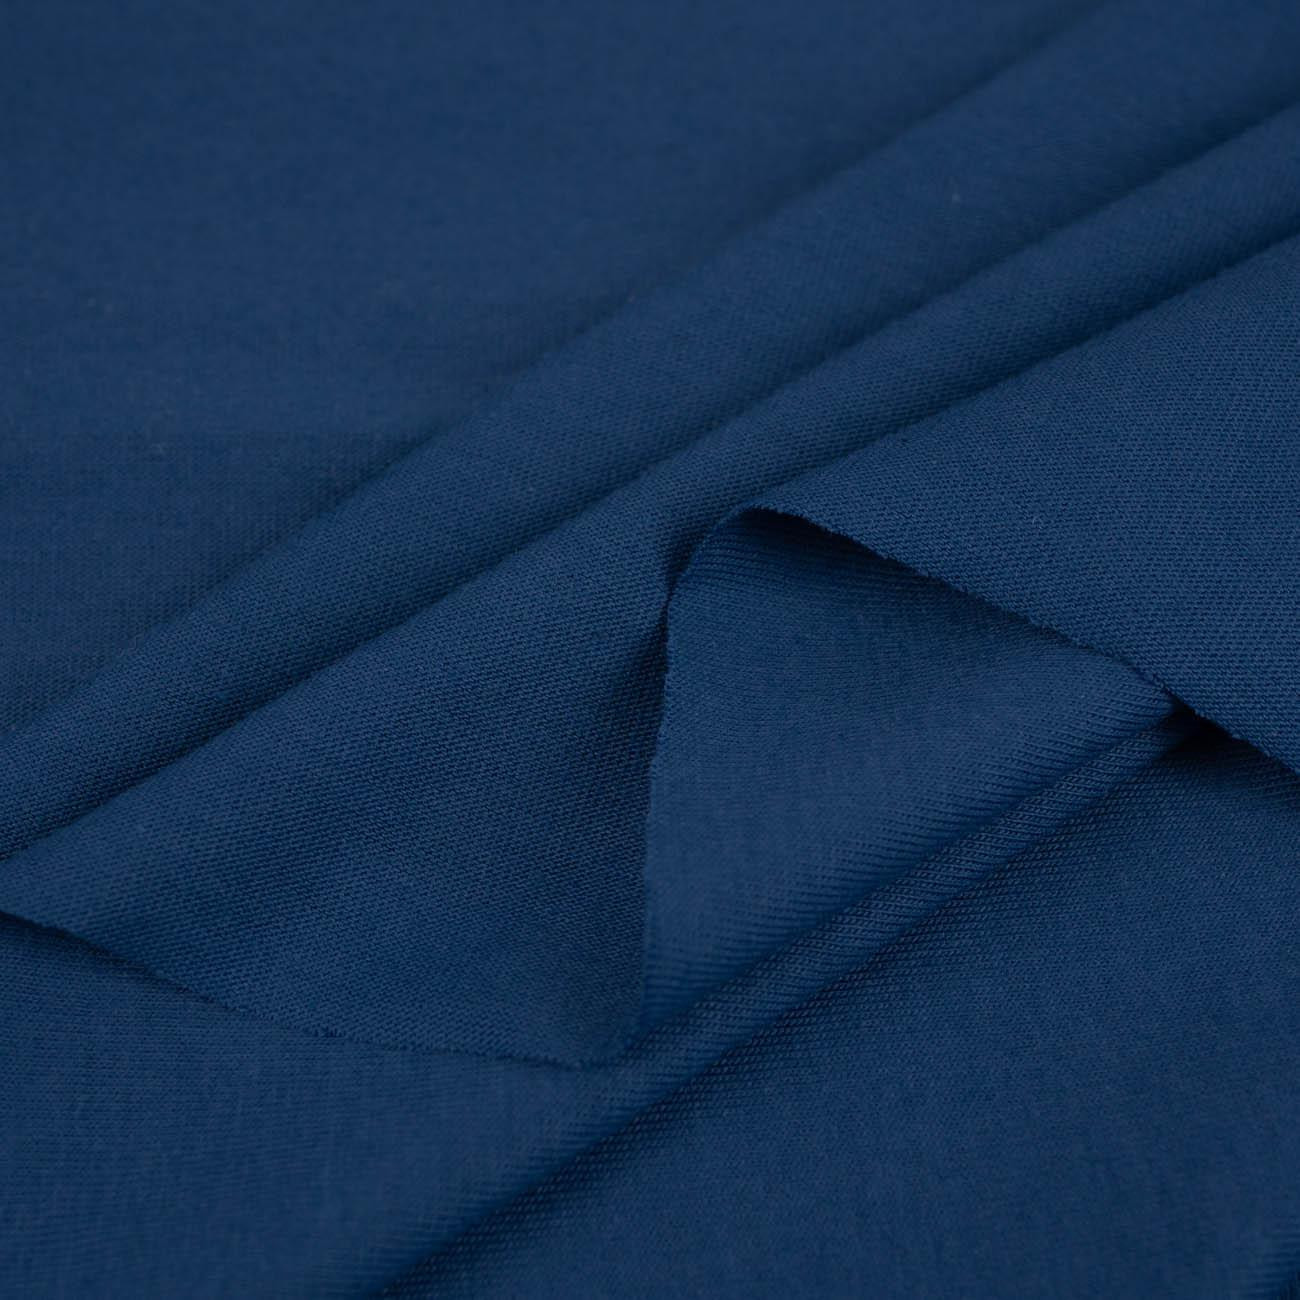 D-94 TMAVĚ MODRÝ - úplet tričkovina 100% bavlna T140